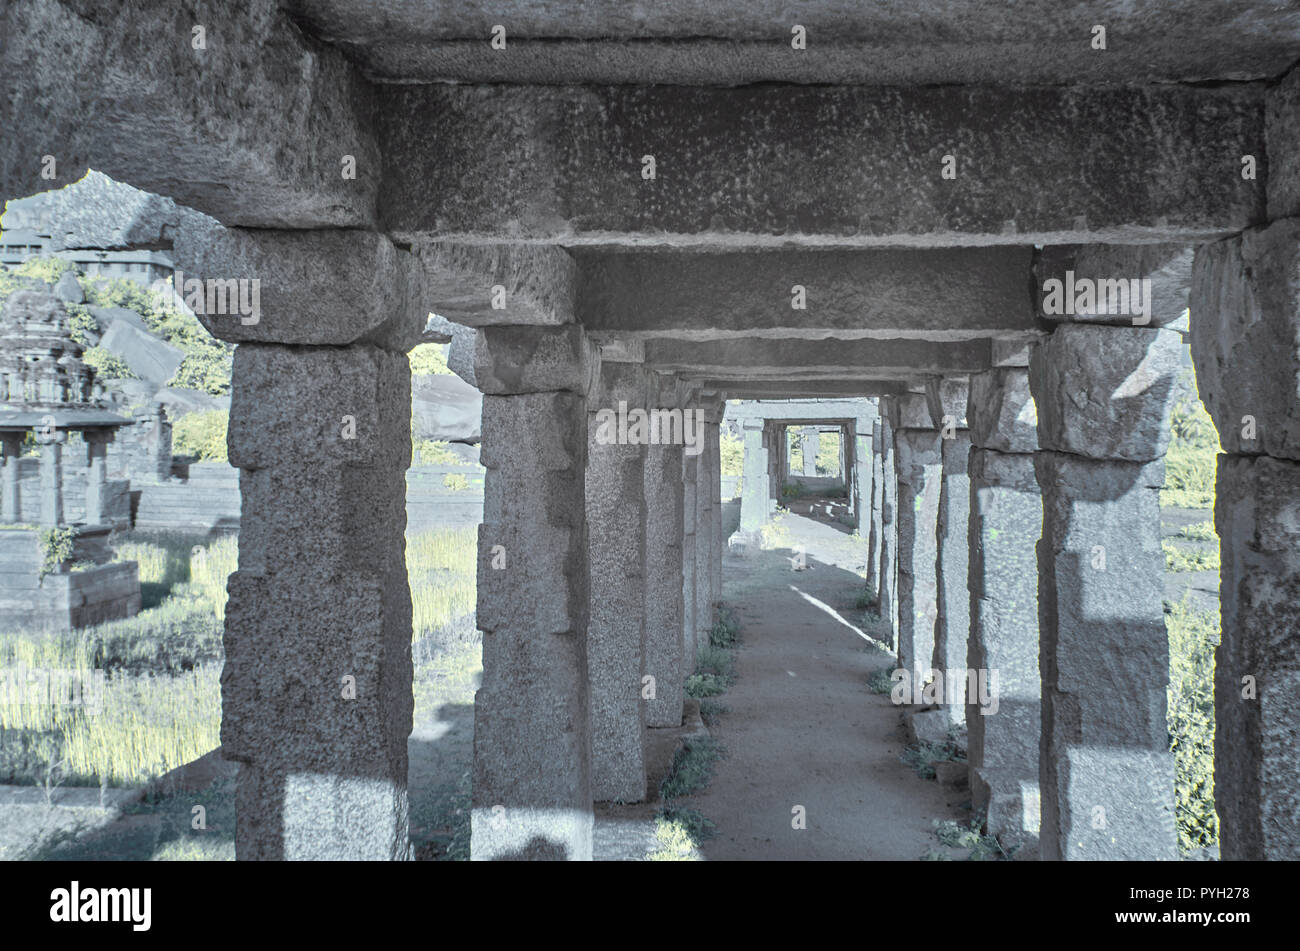 Piliers de granit soutenant un toit en pierre pour une rangée de boutiques au cours de l'empire Vijayanagara dans Hampi Inde Banque D'Images